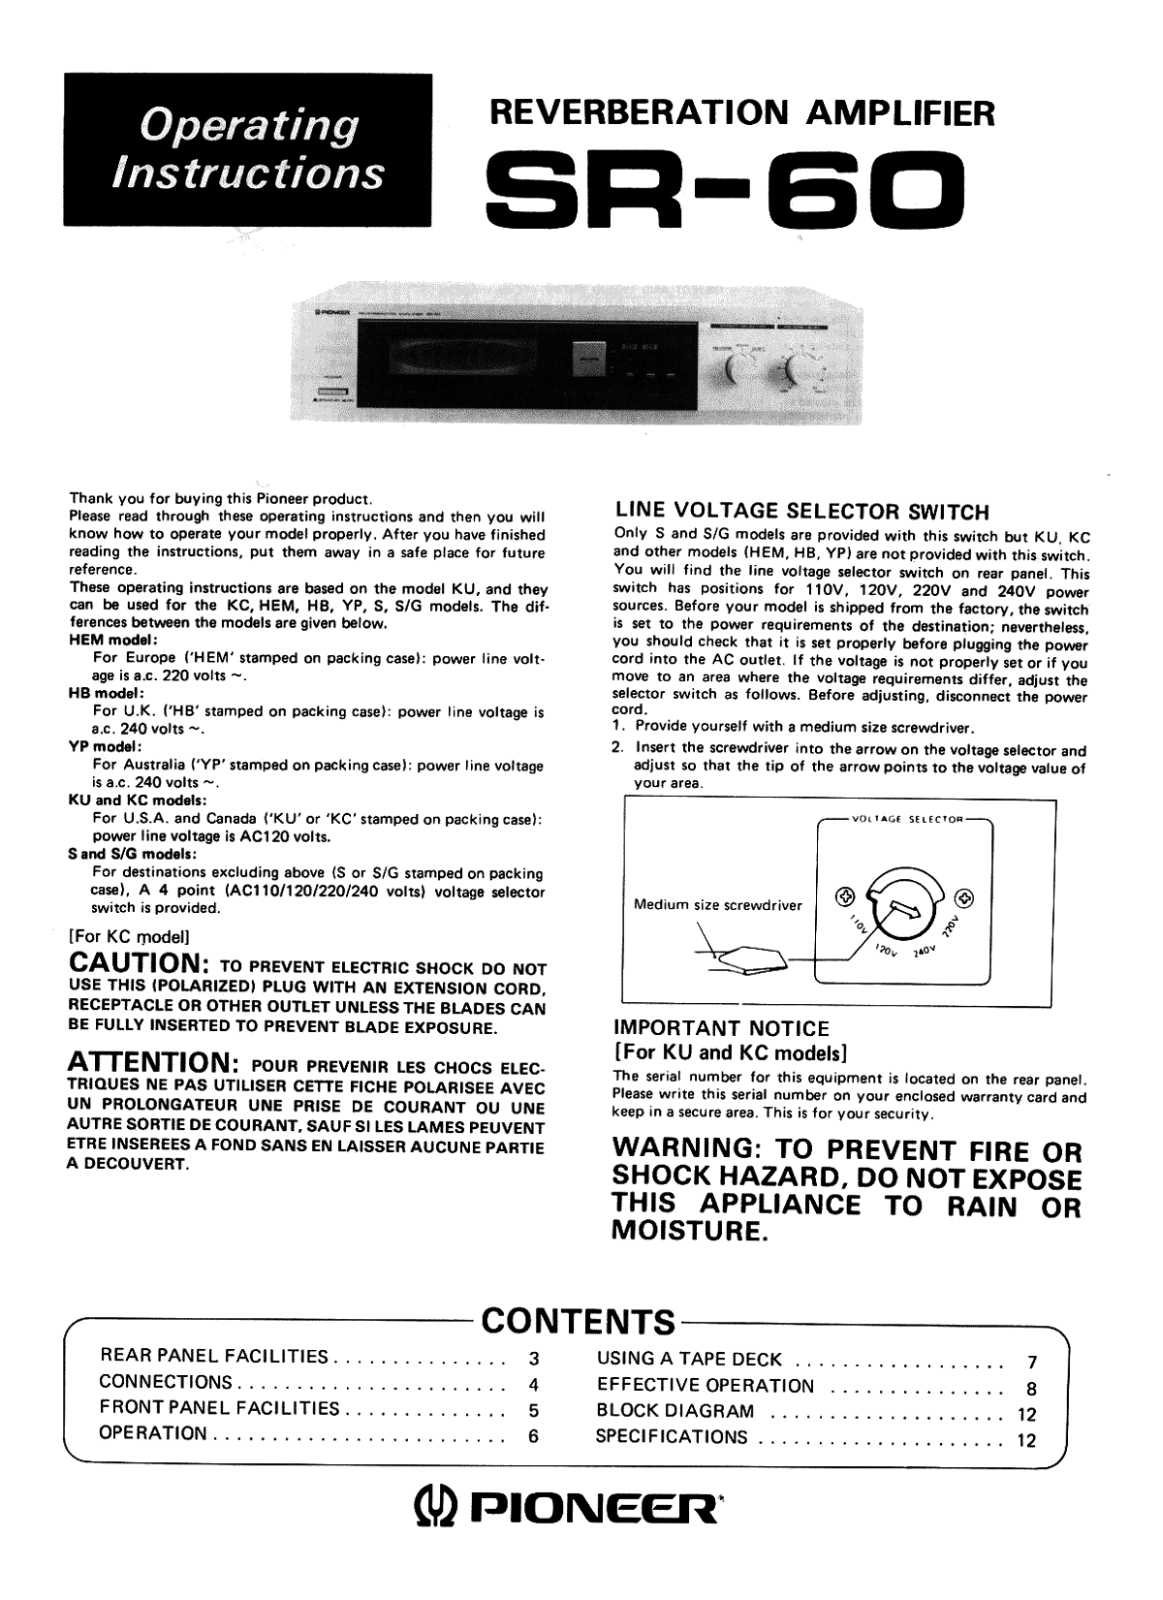 Pioneer SR-60 Owners manual